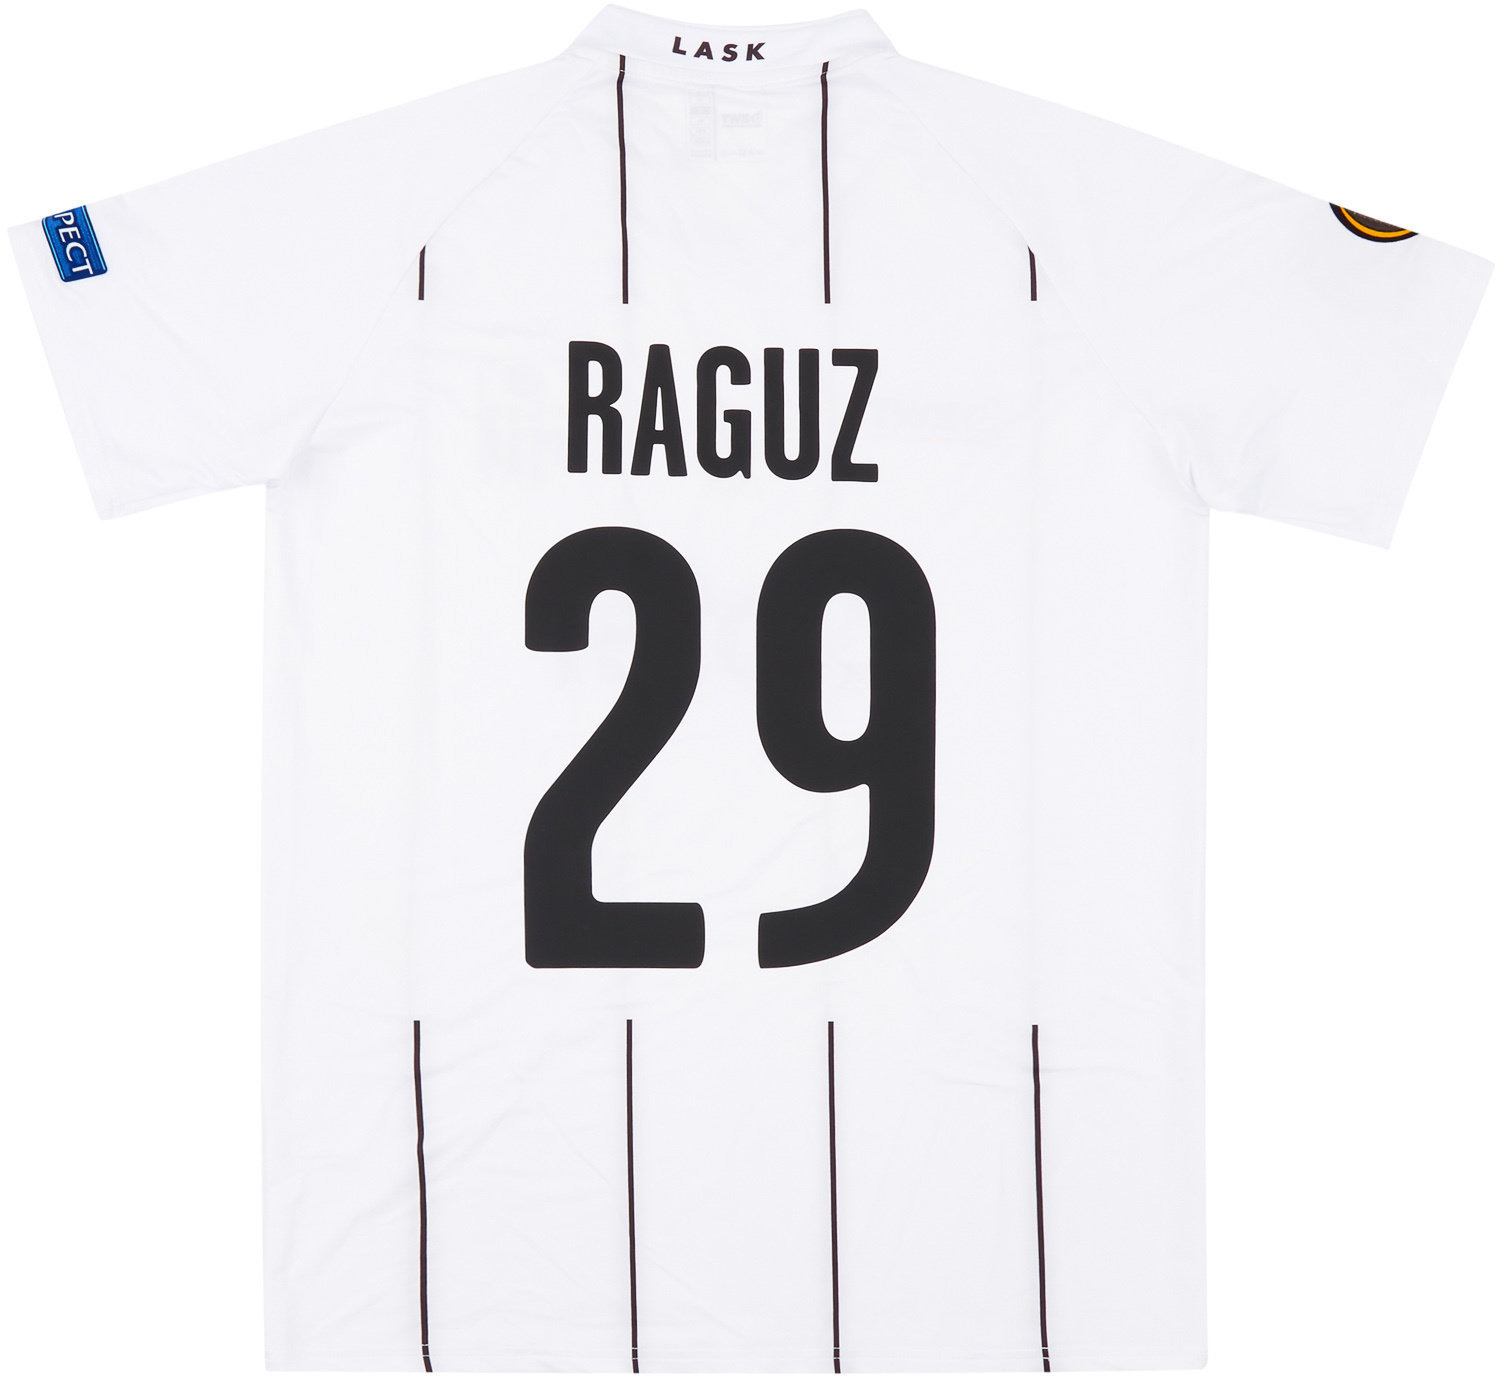 2019-20 LASK Linz Match Issue Europa League Home Shirt Ramsebner #15